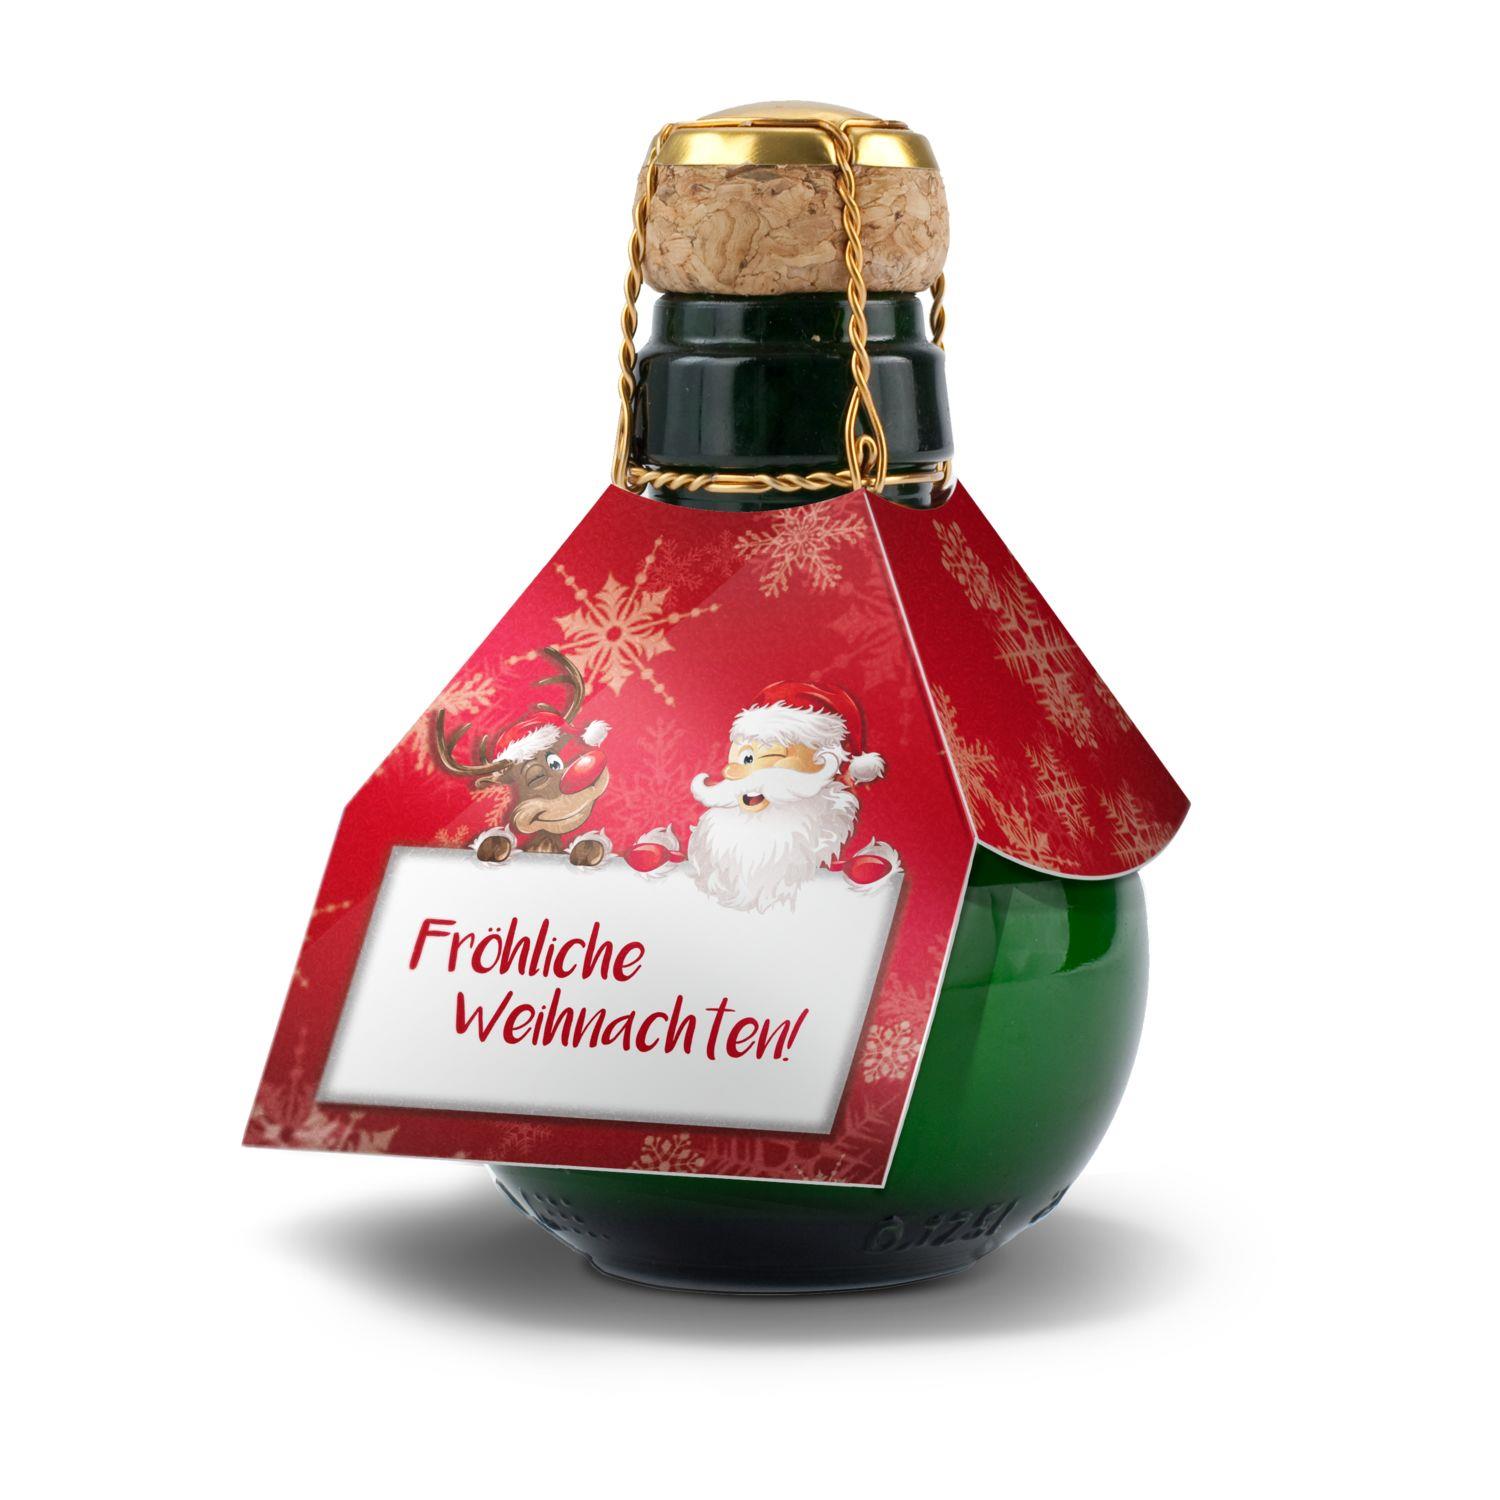 Kleinste Sektflasche der Welt Fröhliche Weihnachten